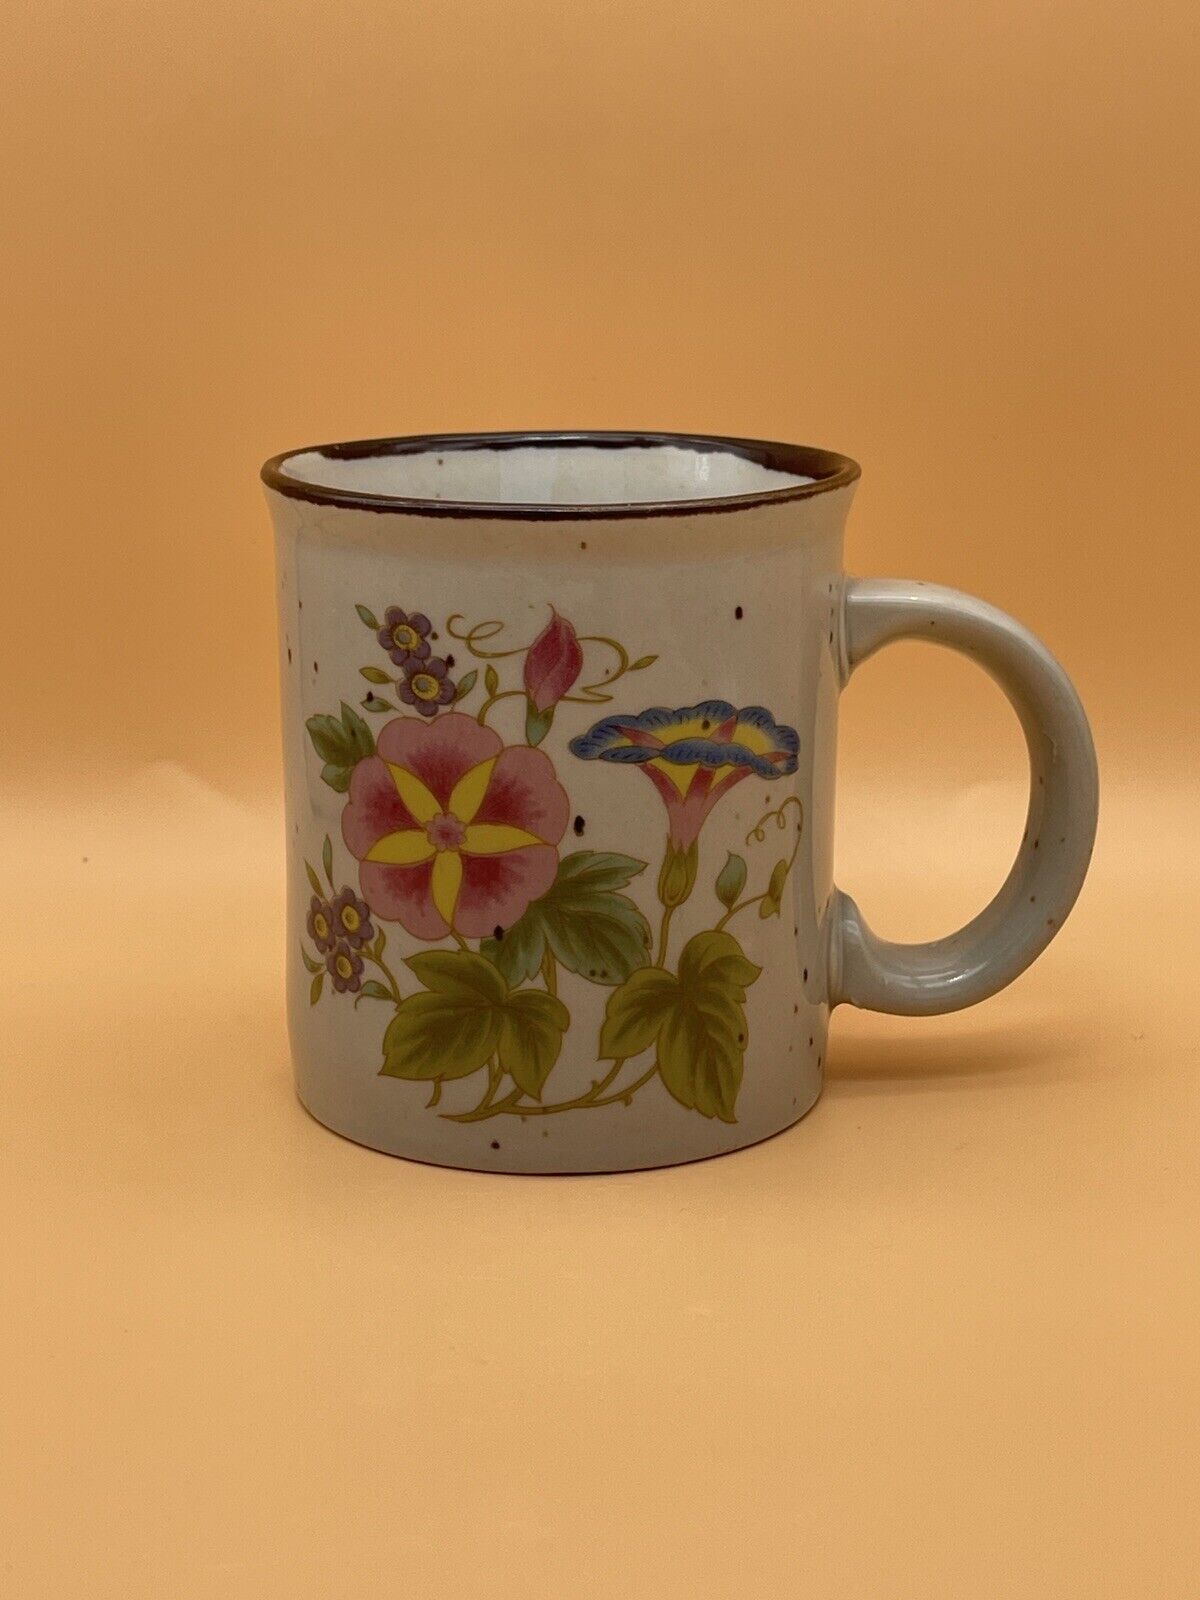 Vintage Speckled Floral Mug From Japan